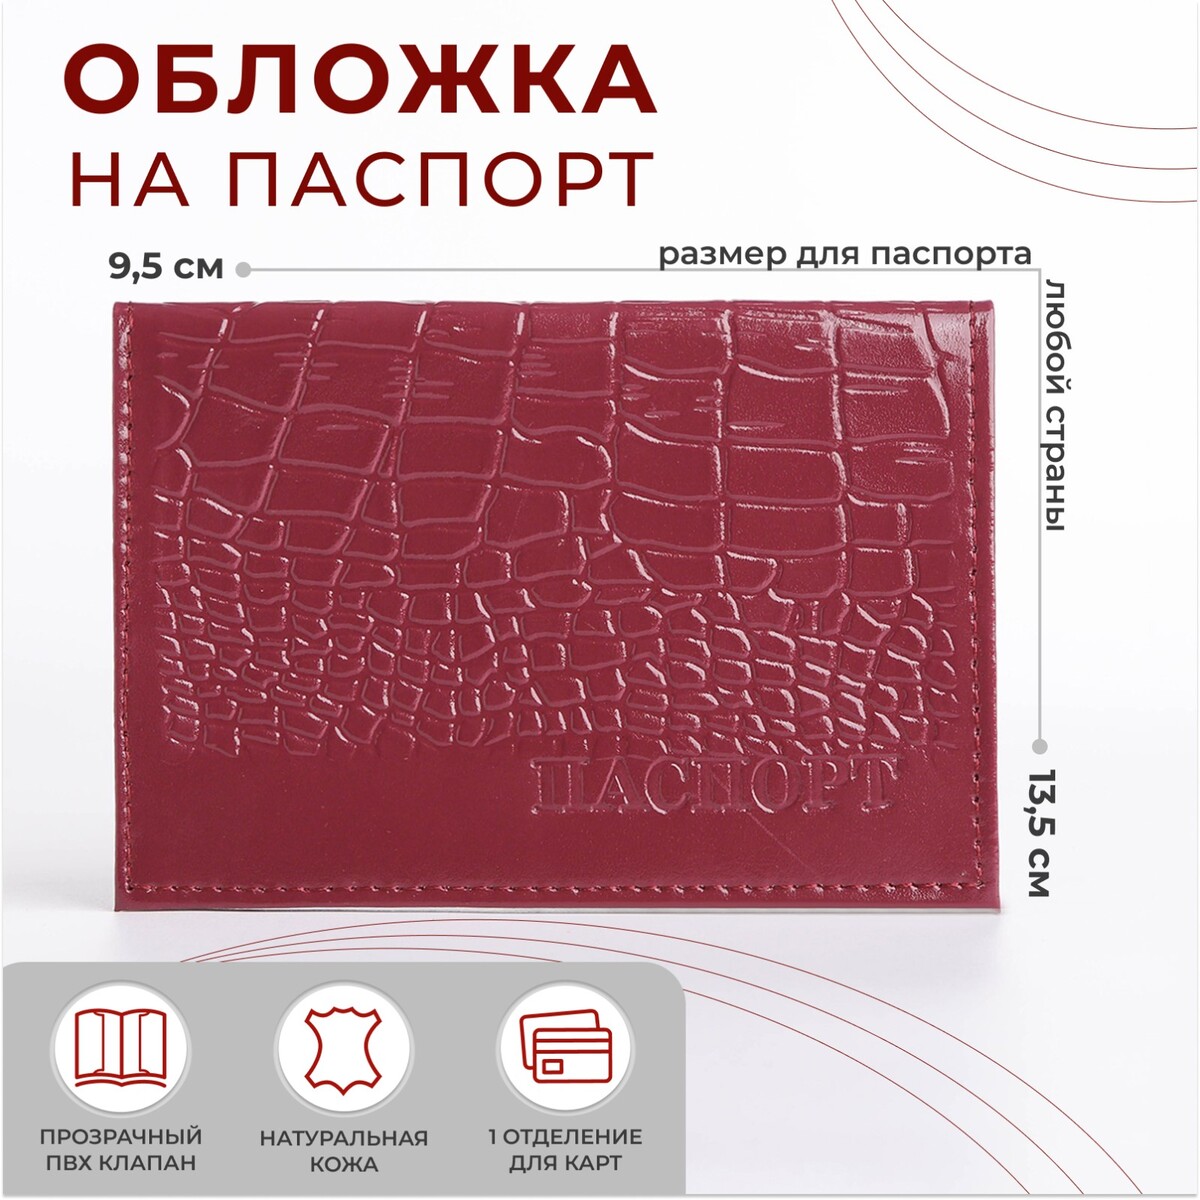 Обложка для паспорта, цвет лиловый обложка для паспорта лиловый